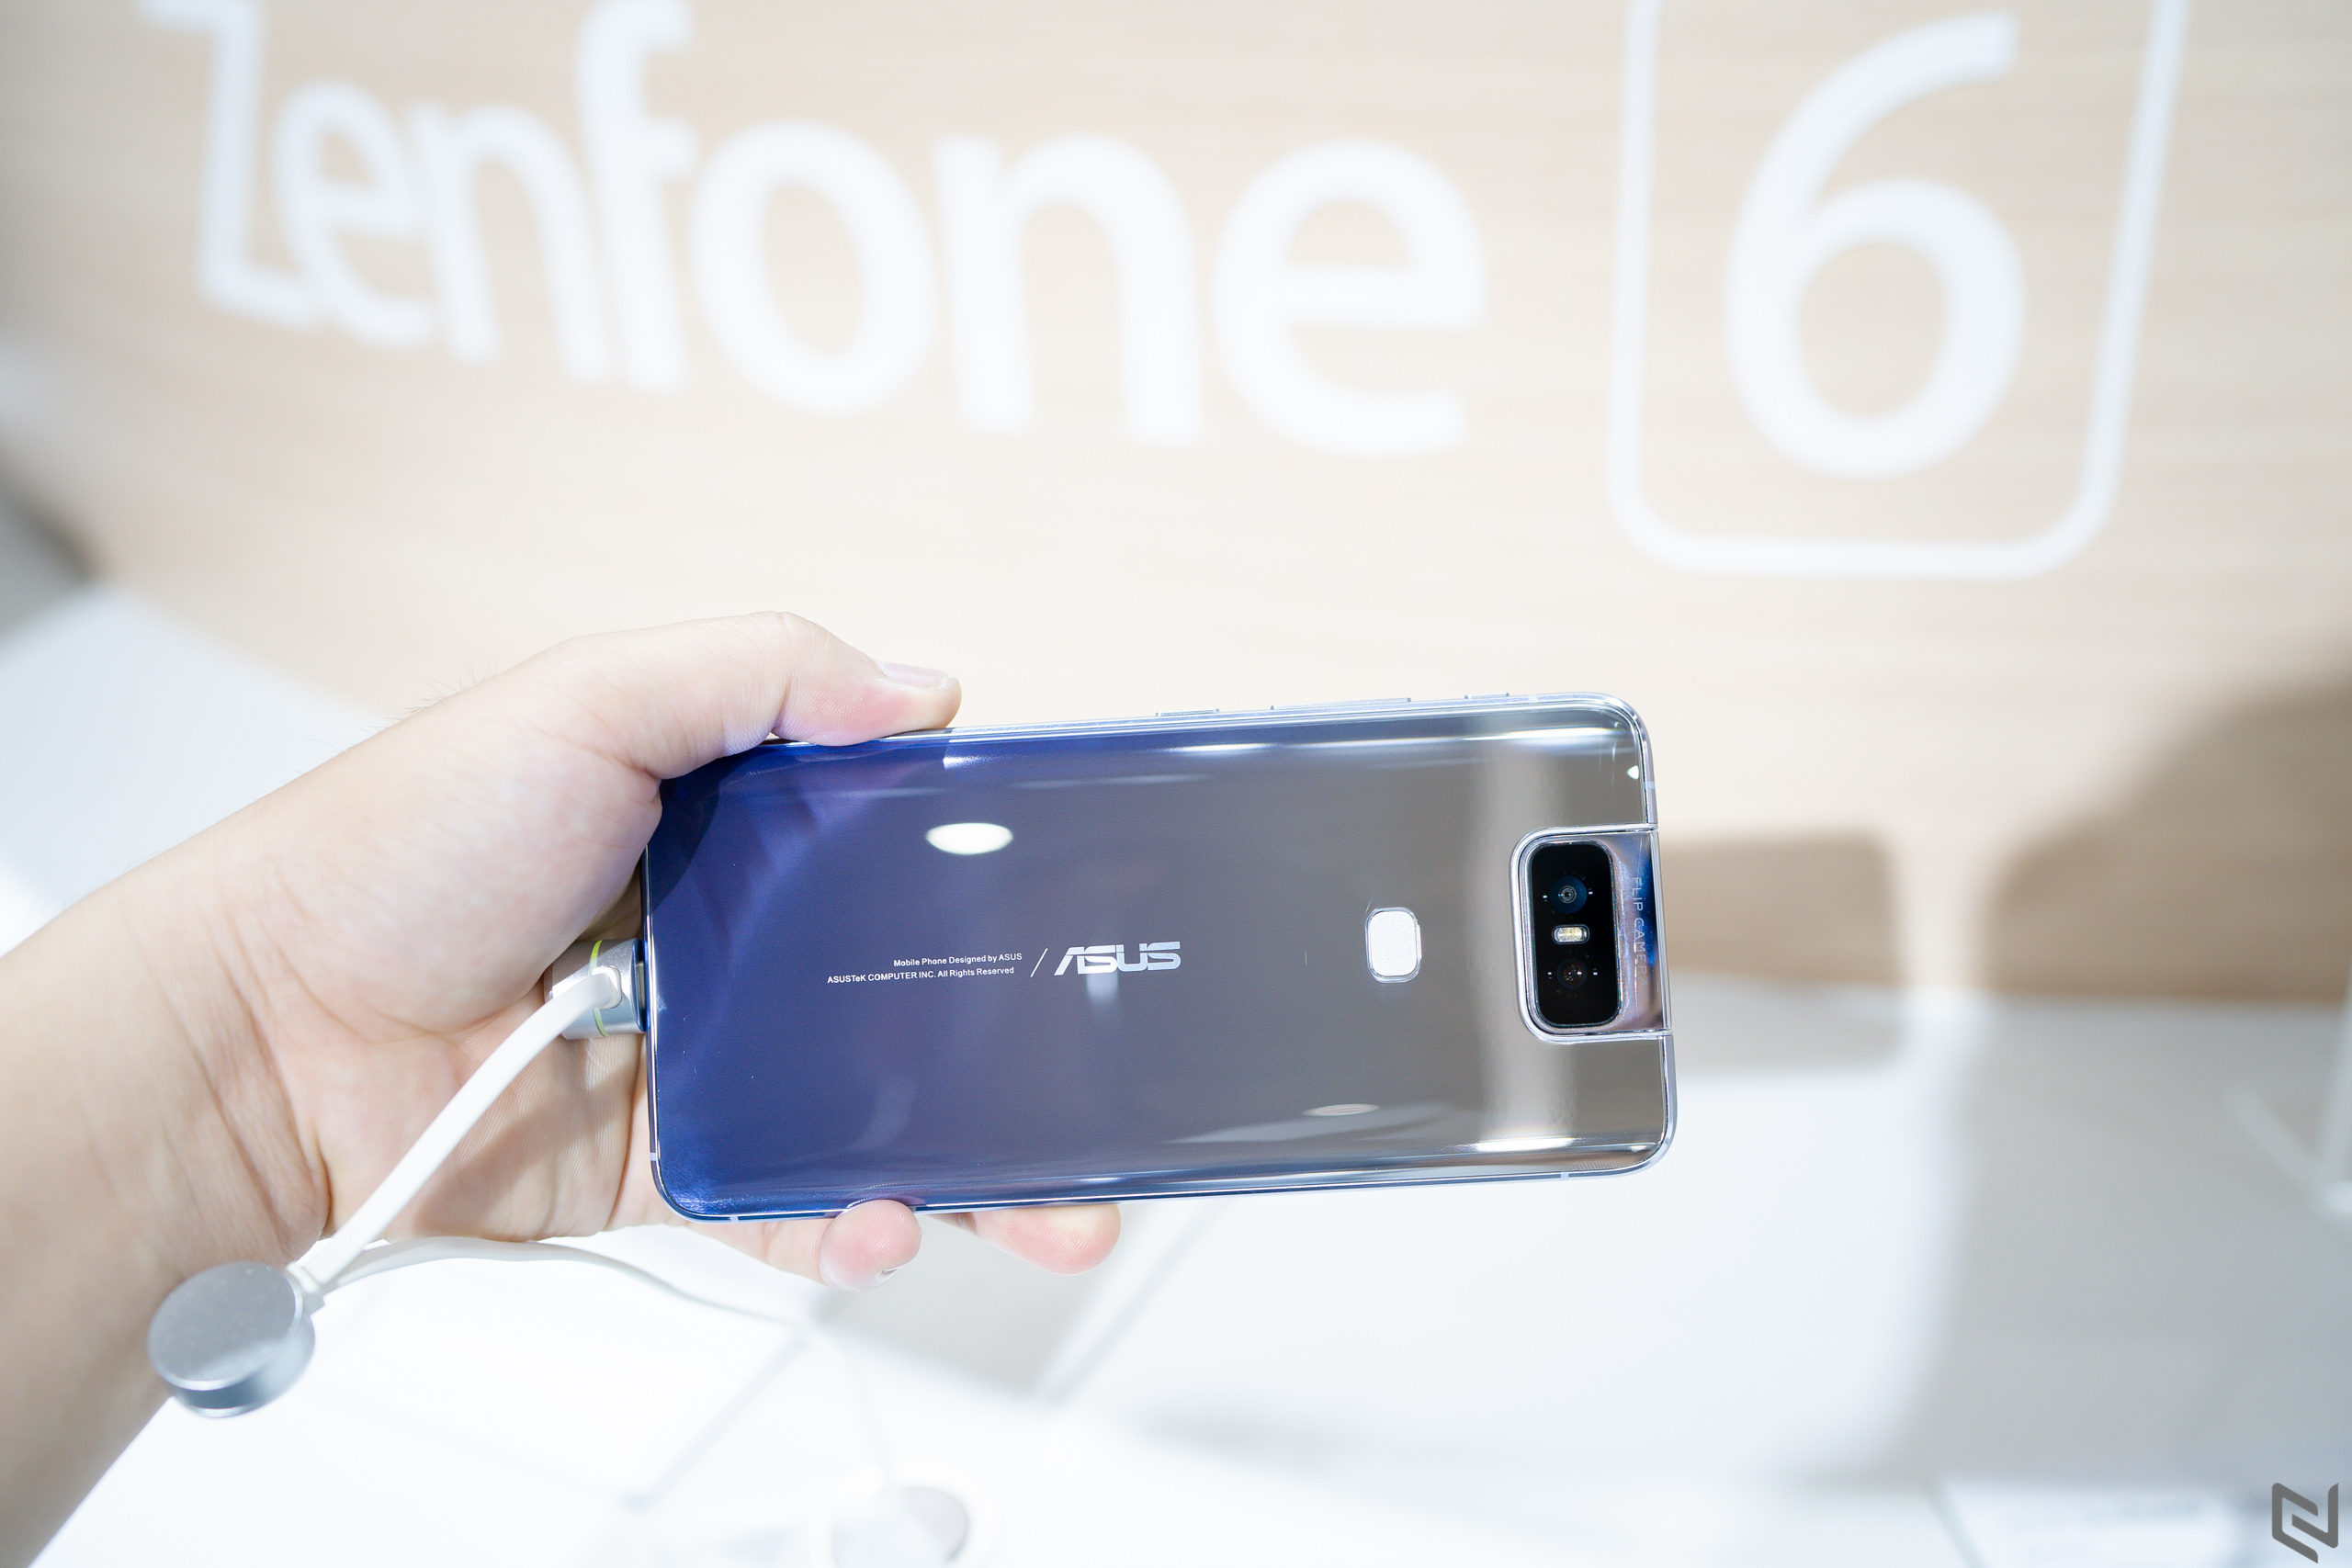 Trên tay ASUS Zenfone 6: Khác biệt với camera lật 180 độ, ngoại hình cao cấp, hiệu năng cao